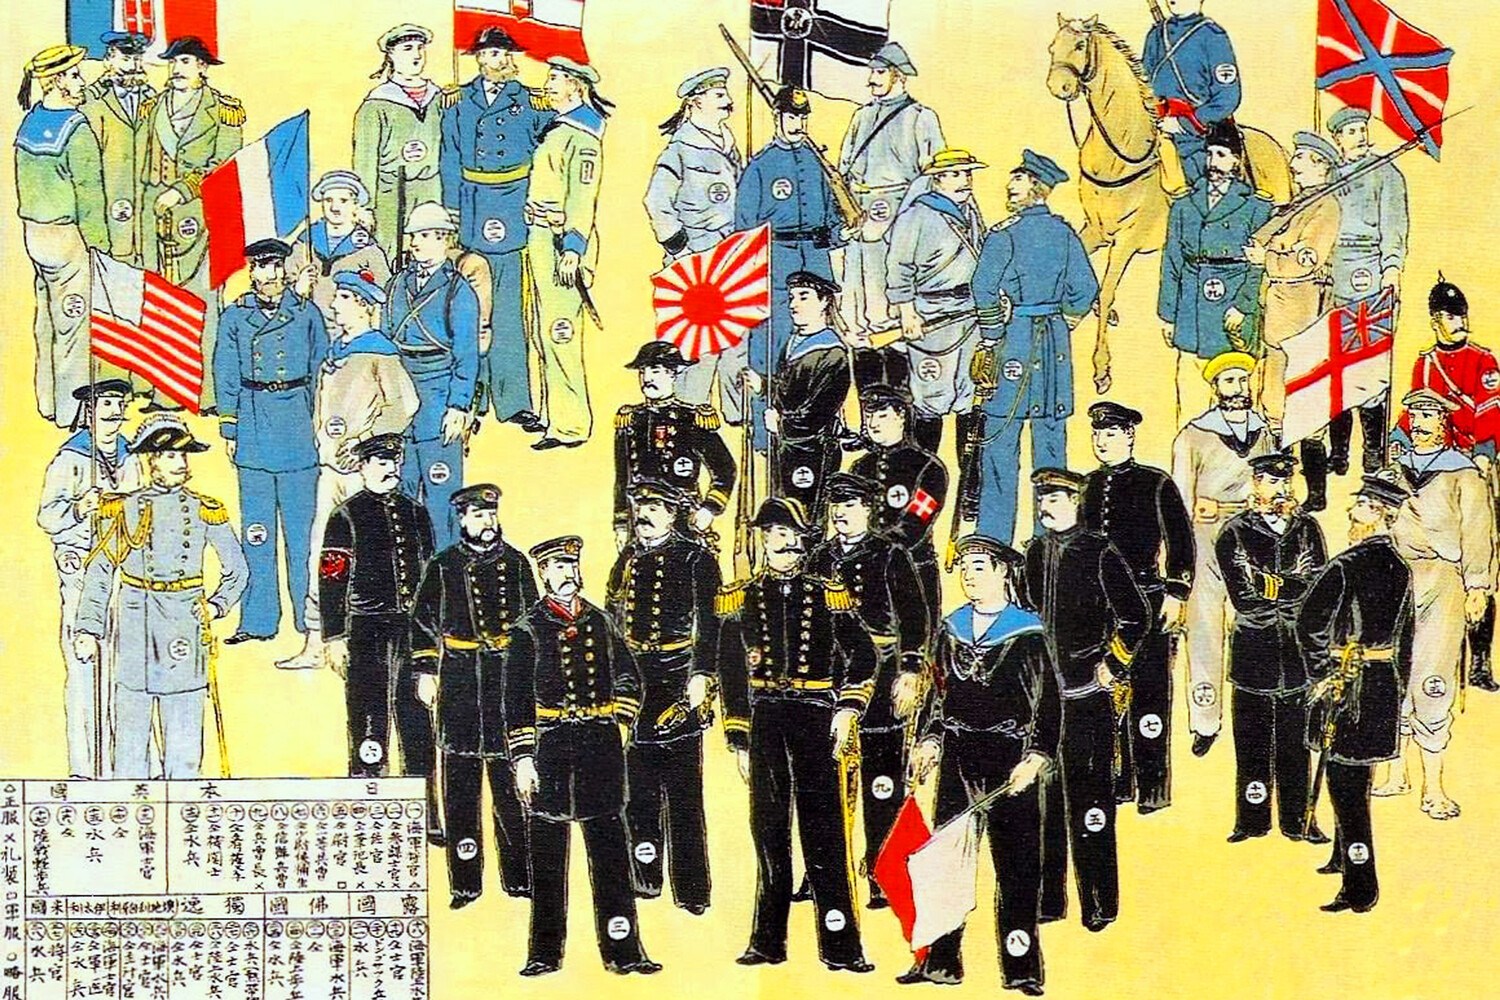 Иллюстрация вооружённых сил альянса восьми держав слева направо: Италия, США, Франция, Австро-Венгрия, Япония, Германия, Великобритания, Россия